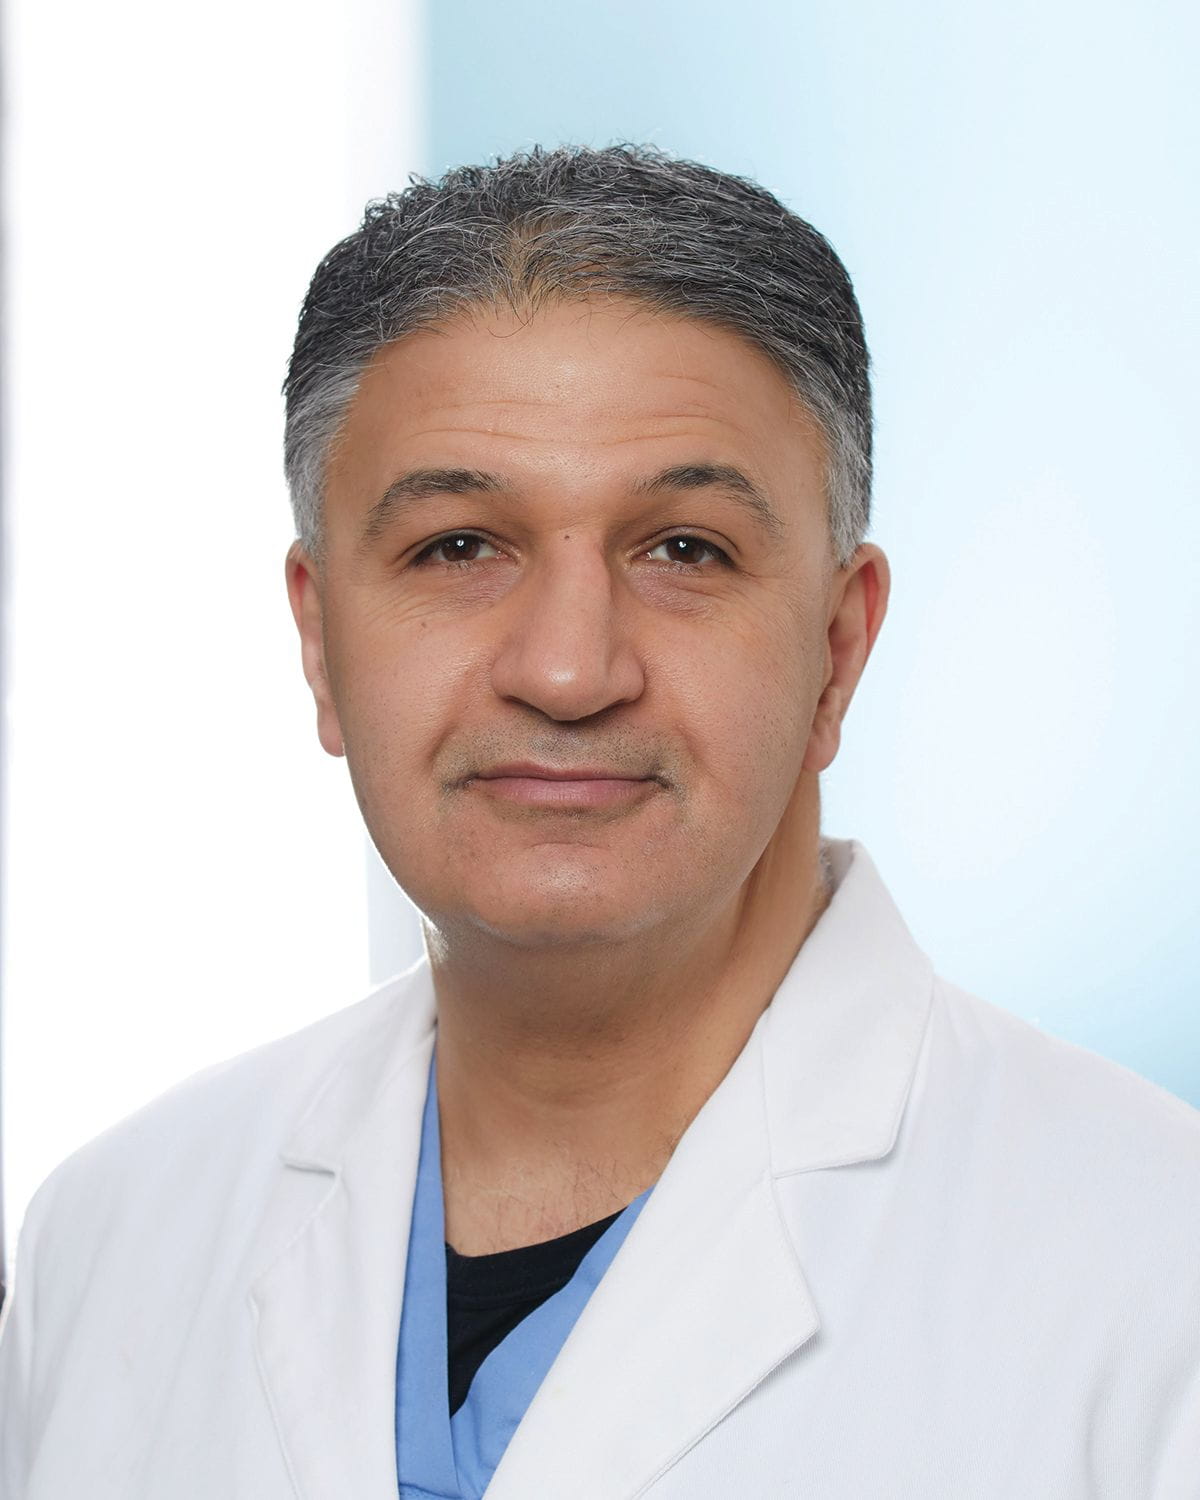 Dr. Vafa C. Mansouri